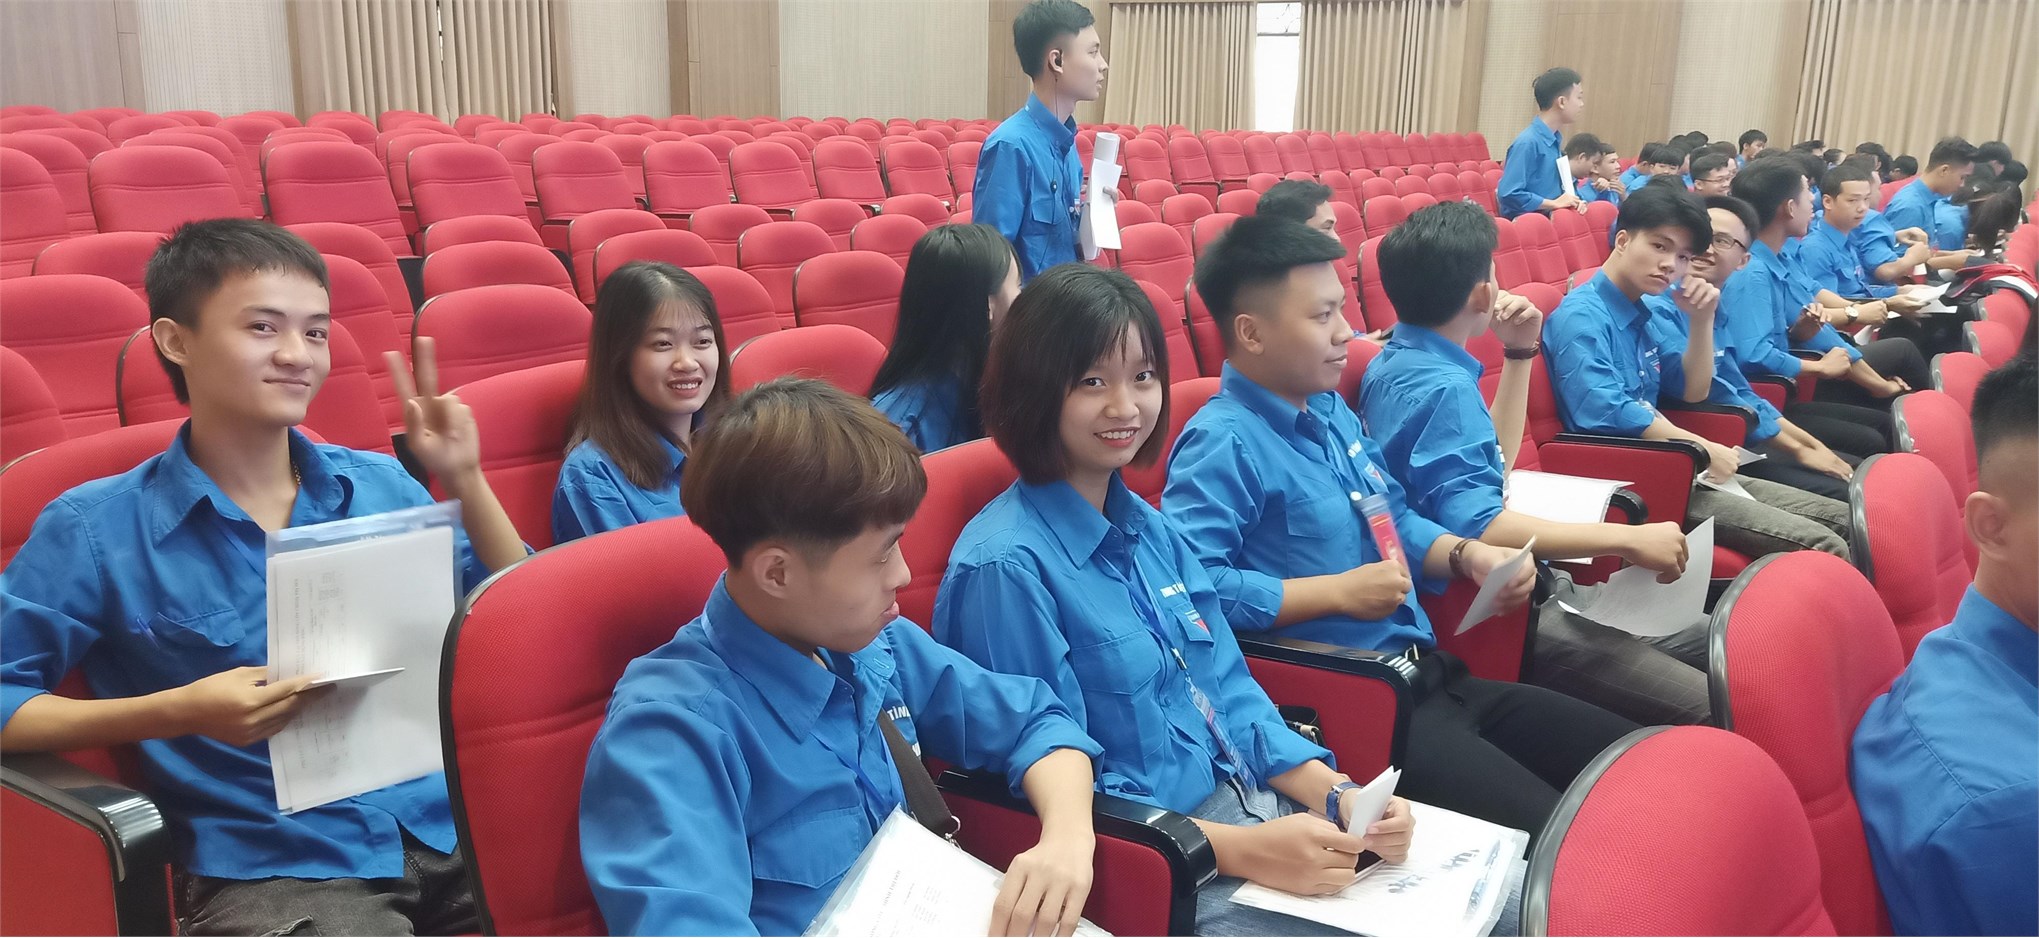 Đoàn đại biểu Liên chi đoàn Trung tâm Việt Nhật dự Đại hội đại biểu Đoàn TNCS Hồ Chí Minh trường Đại học Công nghiệp Hà Nội lần thứ IX, nhiệm kỳ 2019 – 2022